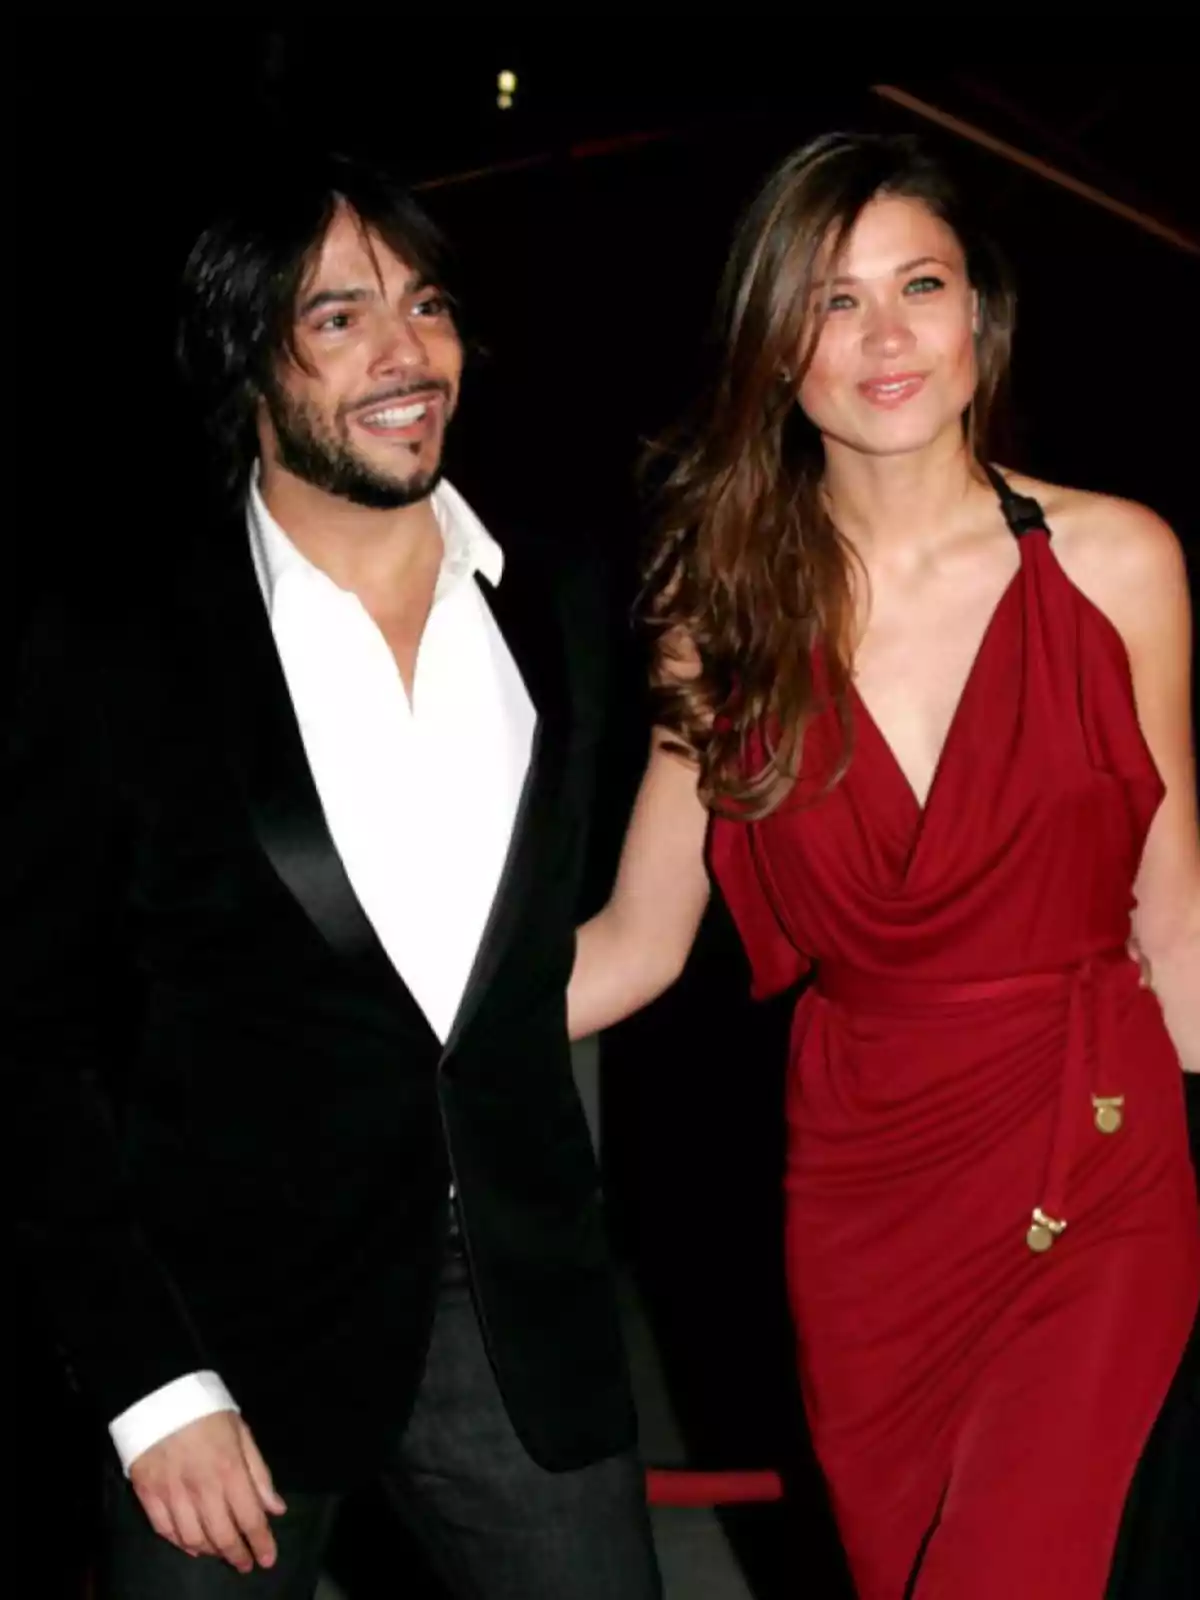 Una pareja elegantemente vestida, el hombre con un traje negro y camisa blanca, y la mujer con un vestido rojo, posando juntos y sonriendo.